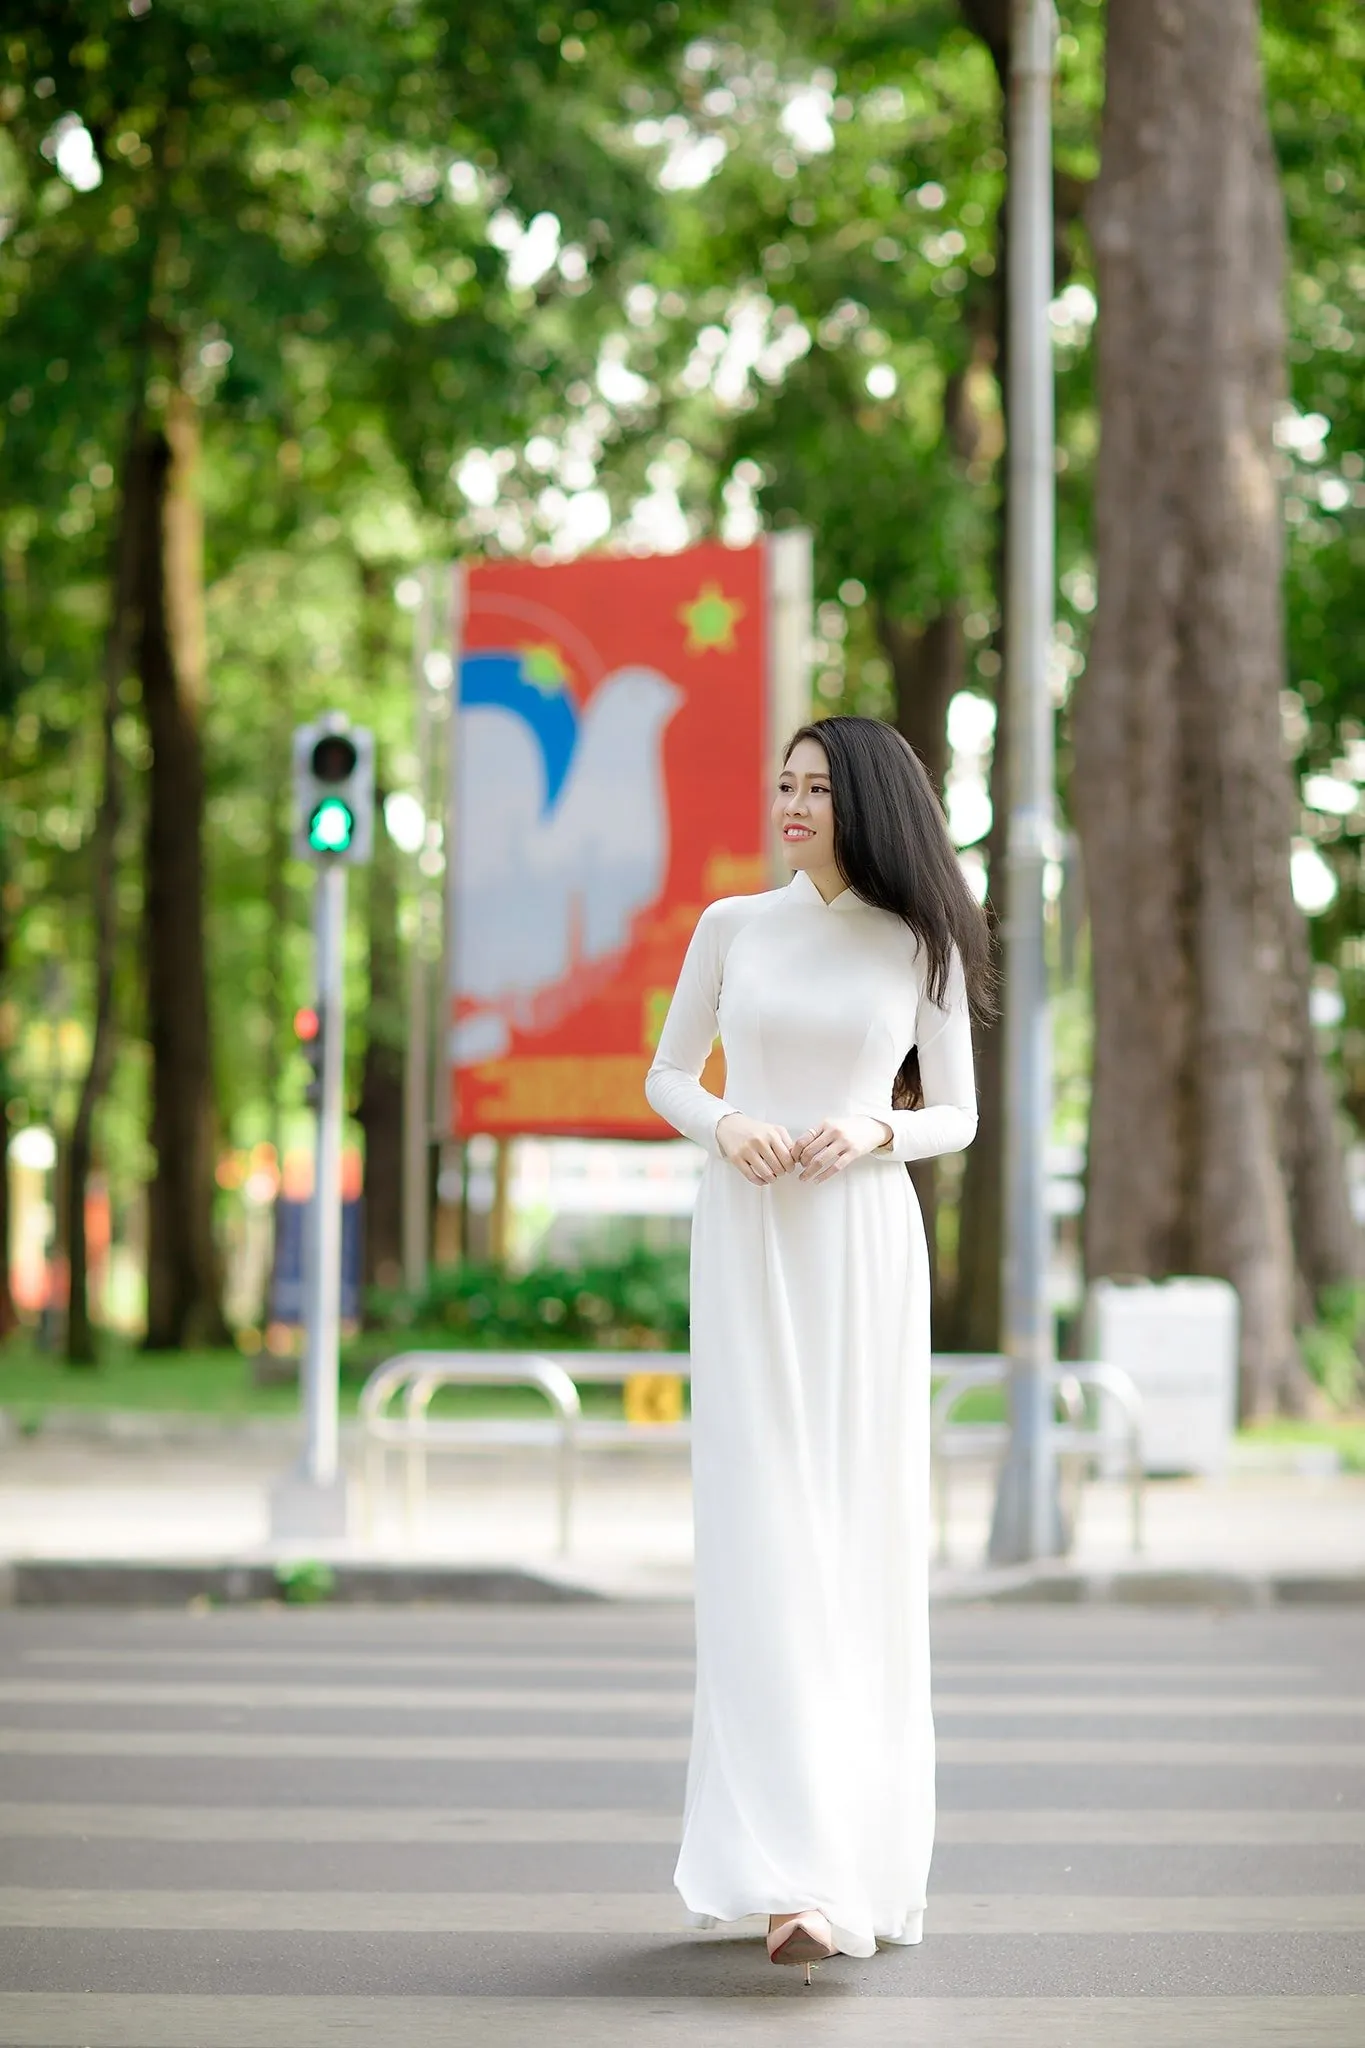 ao dai Misa 6 - 49 cách tạo dáng chụp ảnh với áo dài tuyệt đẹp - HThao Studio